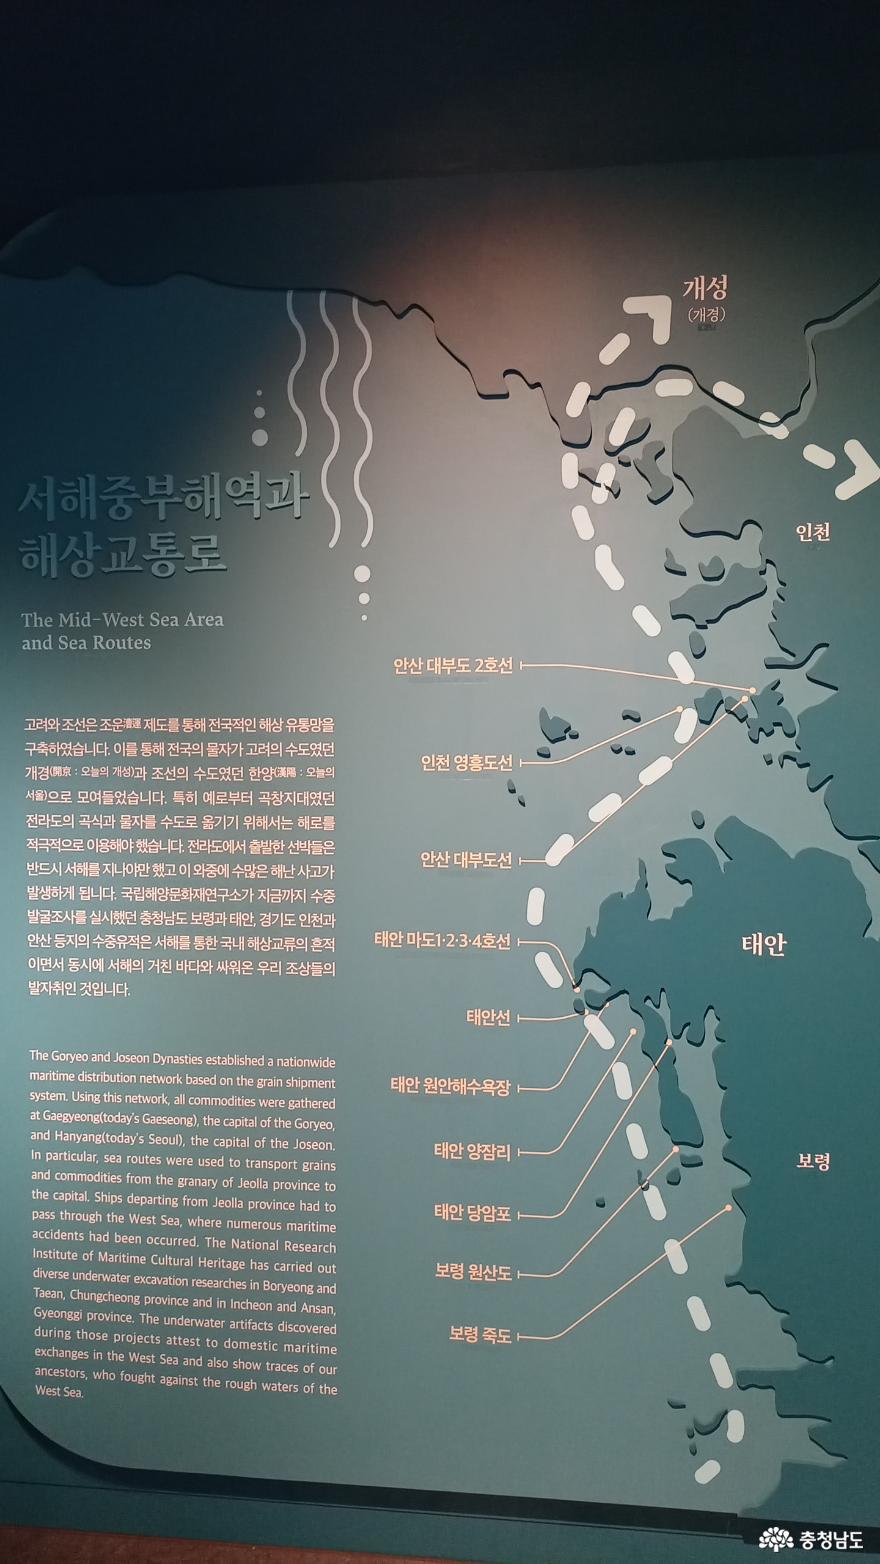 고려와 조선시대 선박이 발견 된 해상로